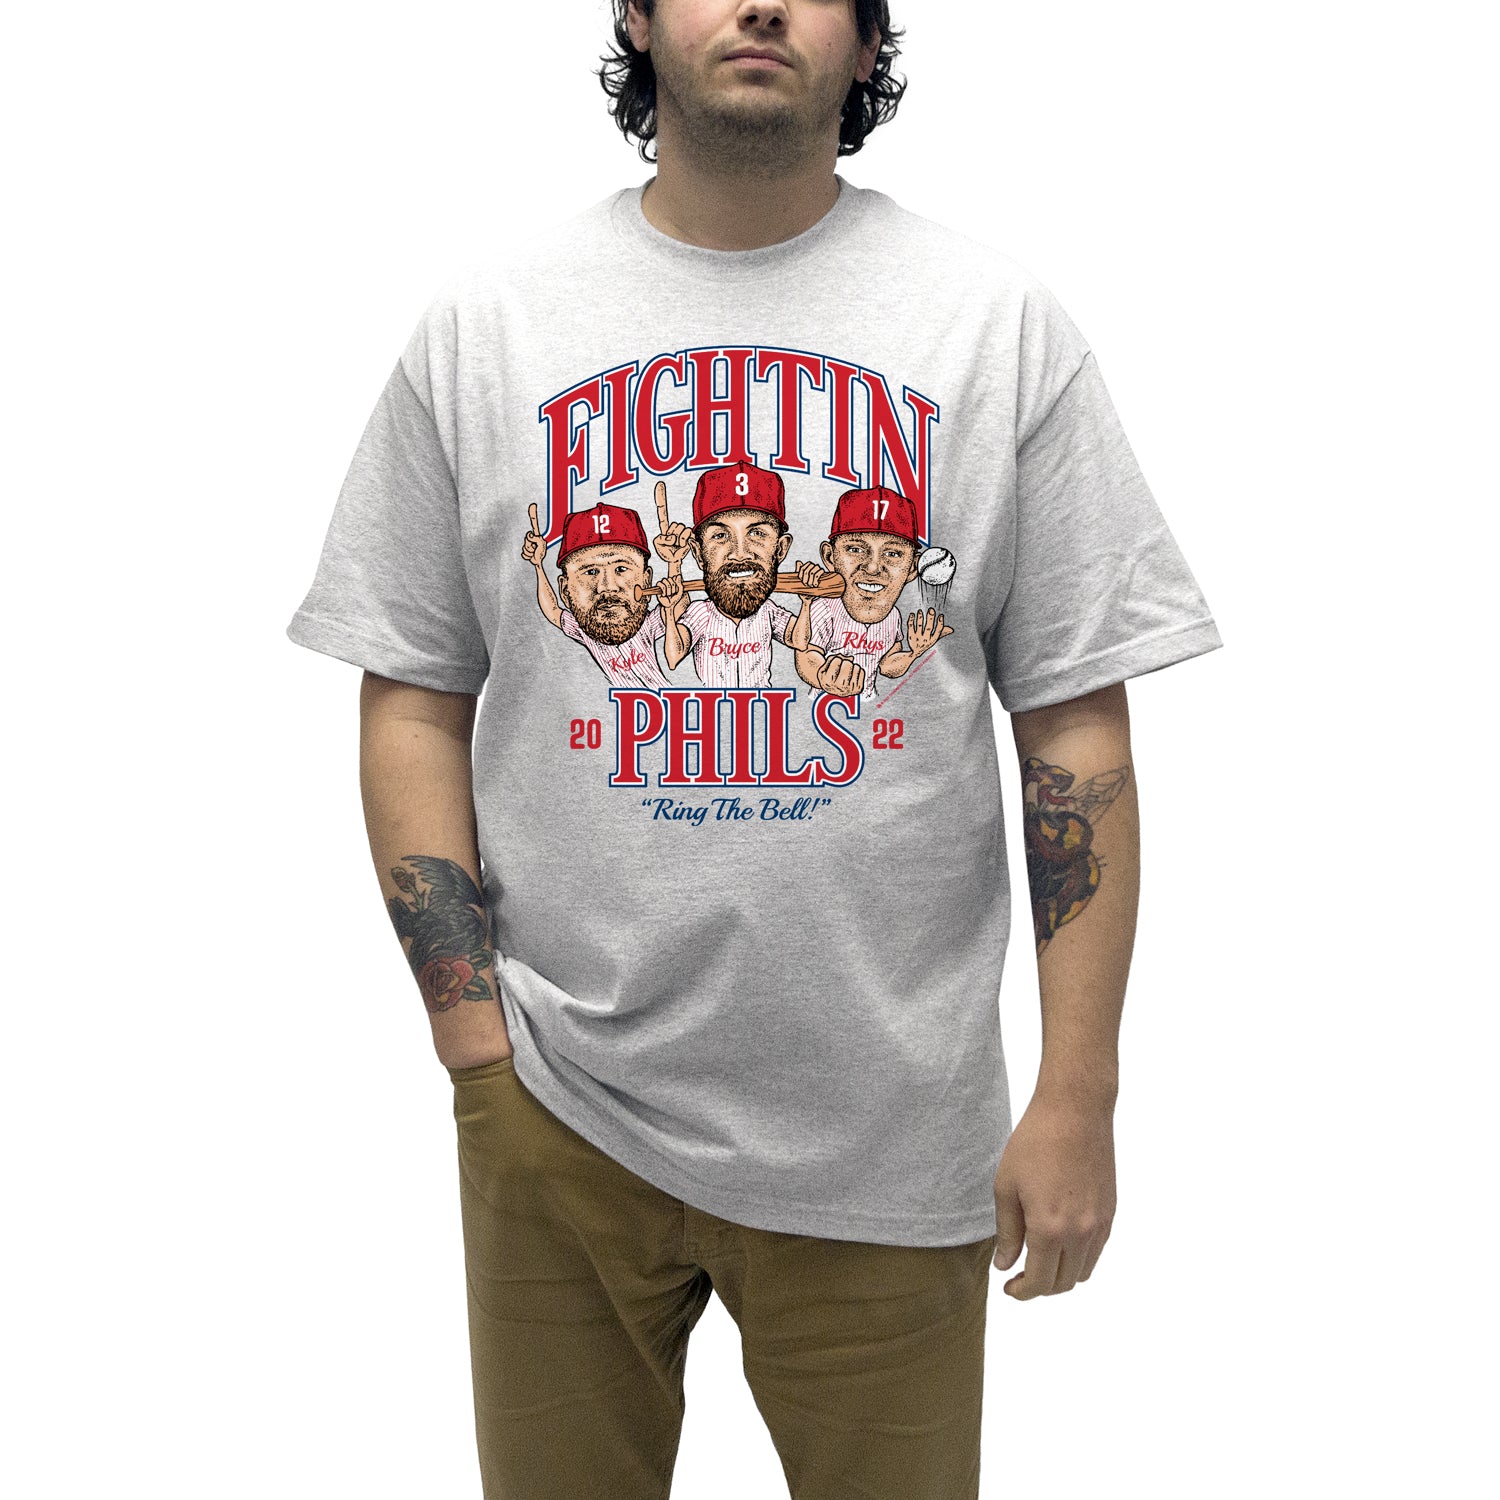 Cracked Bell Philadelphia Baseball Shirt X-Large